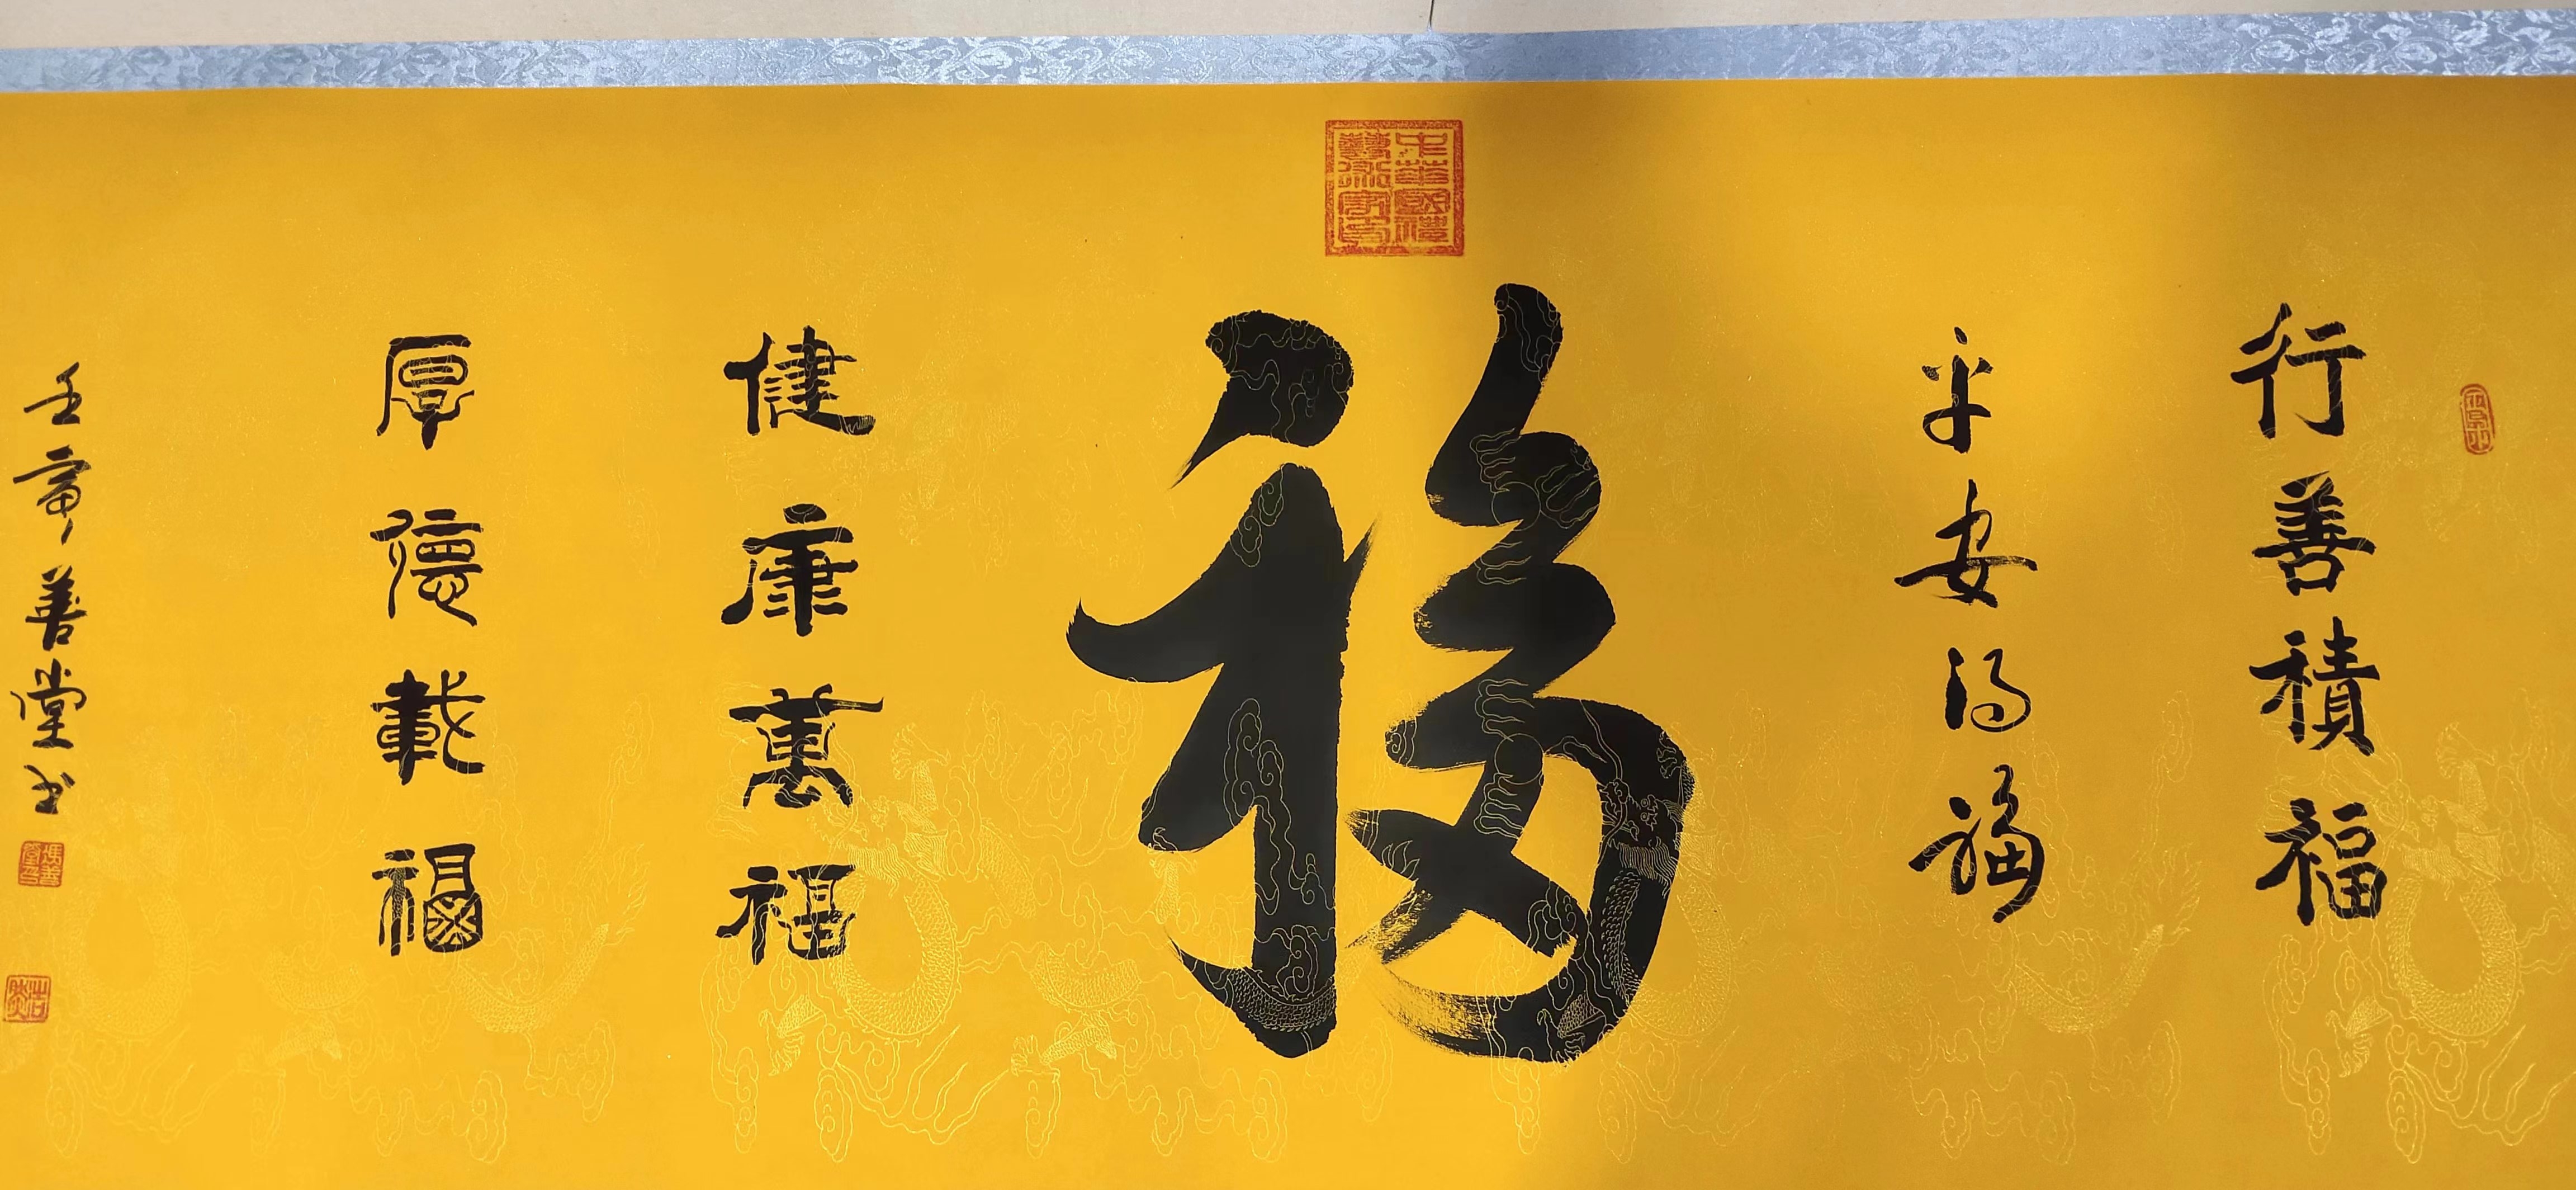 冯善堂——中国书法艺术大师